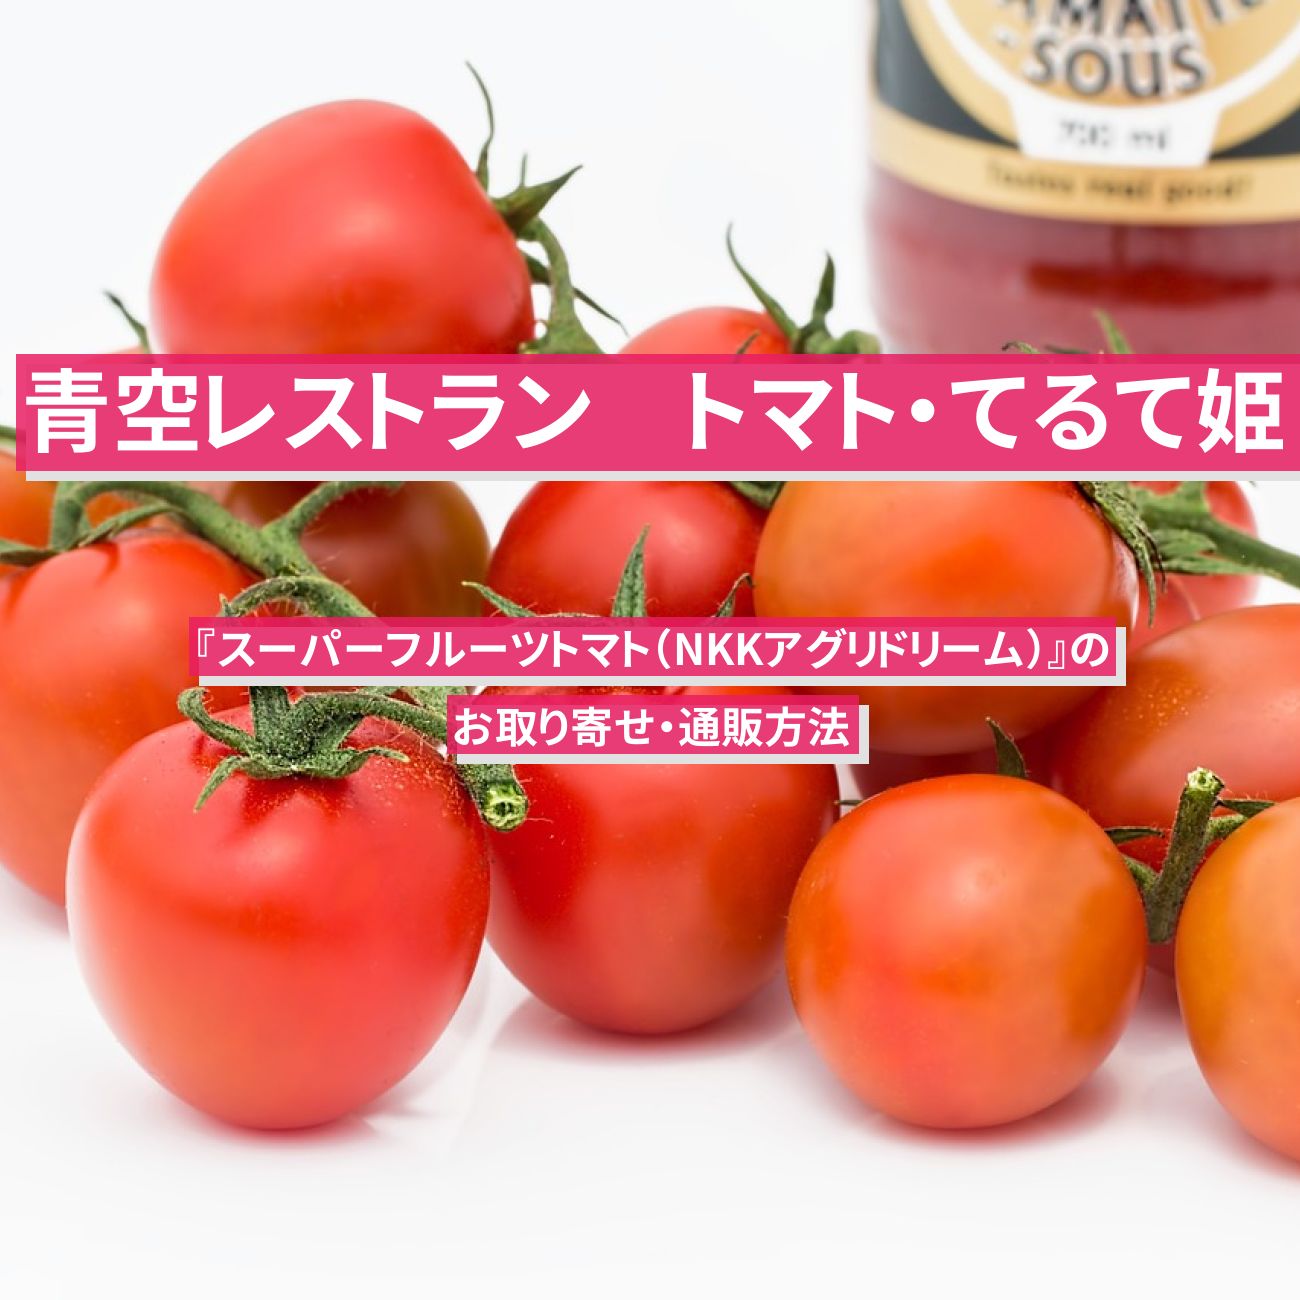 【青空レストラン】特大フルーツトマト『てるて姫 (スーパーフルーツトマト・NKKアグリドリーム)』のお取り寄せ・通販方法